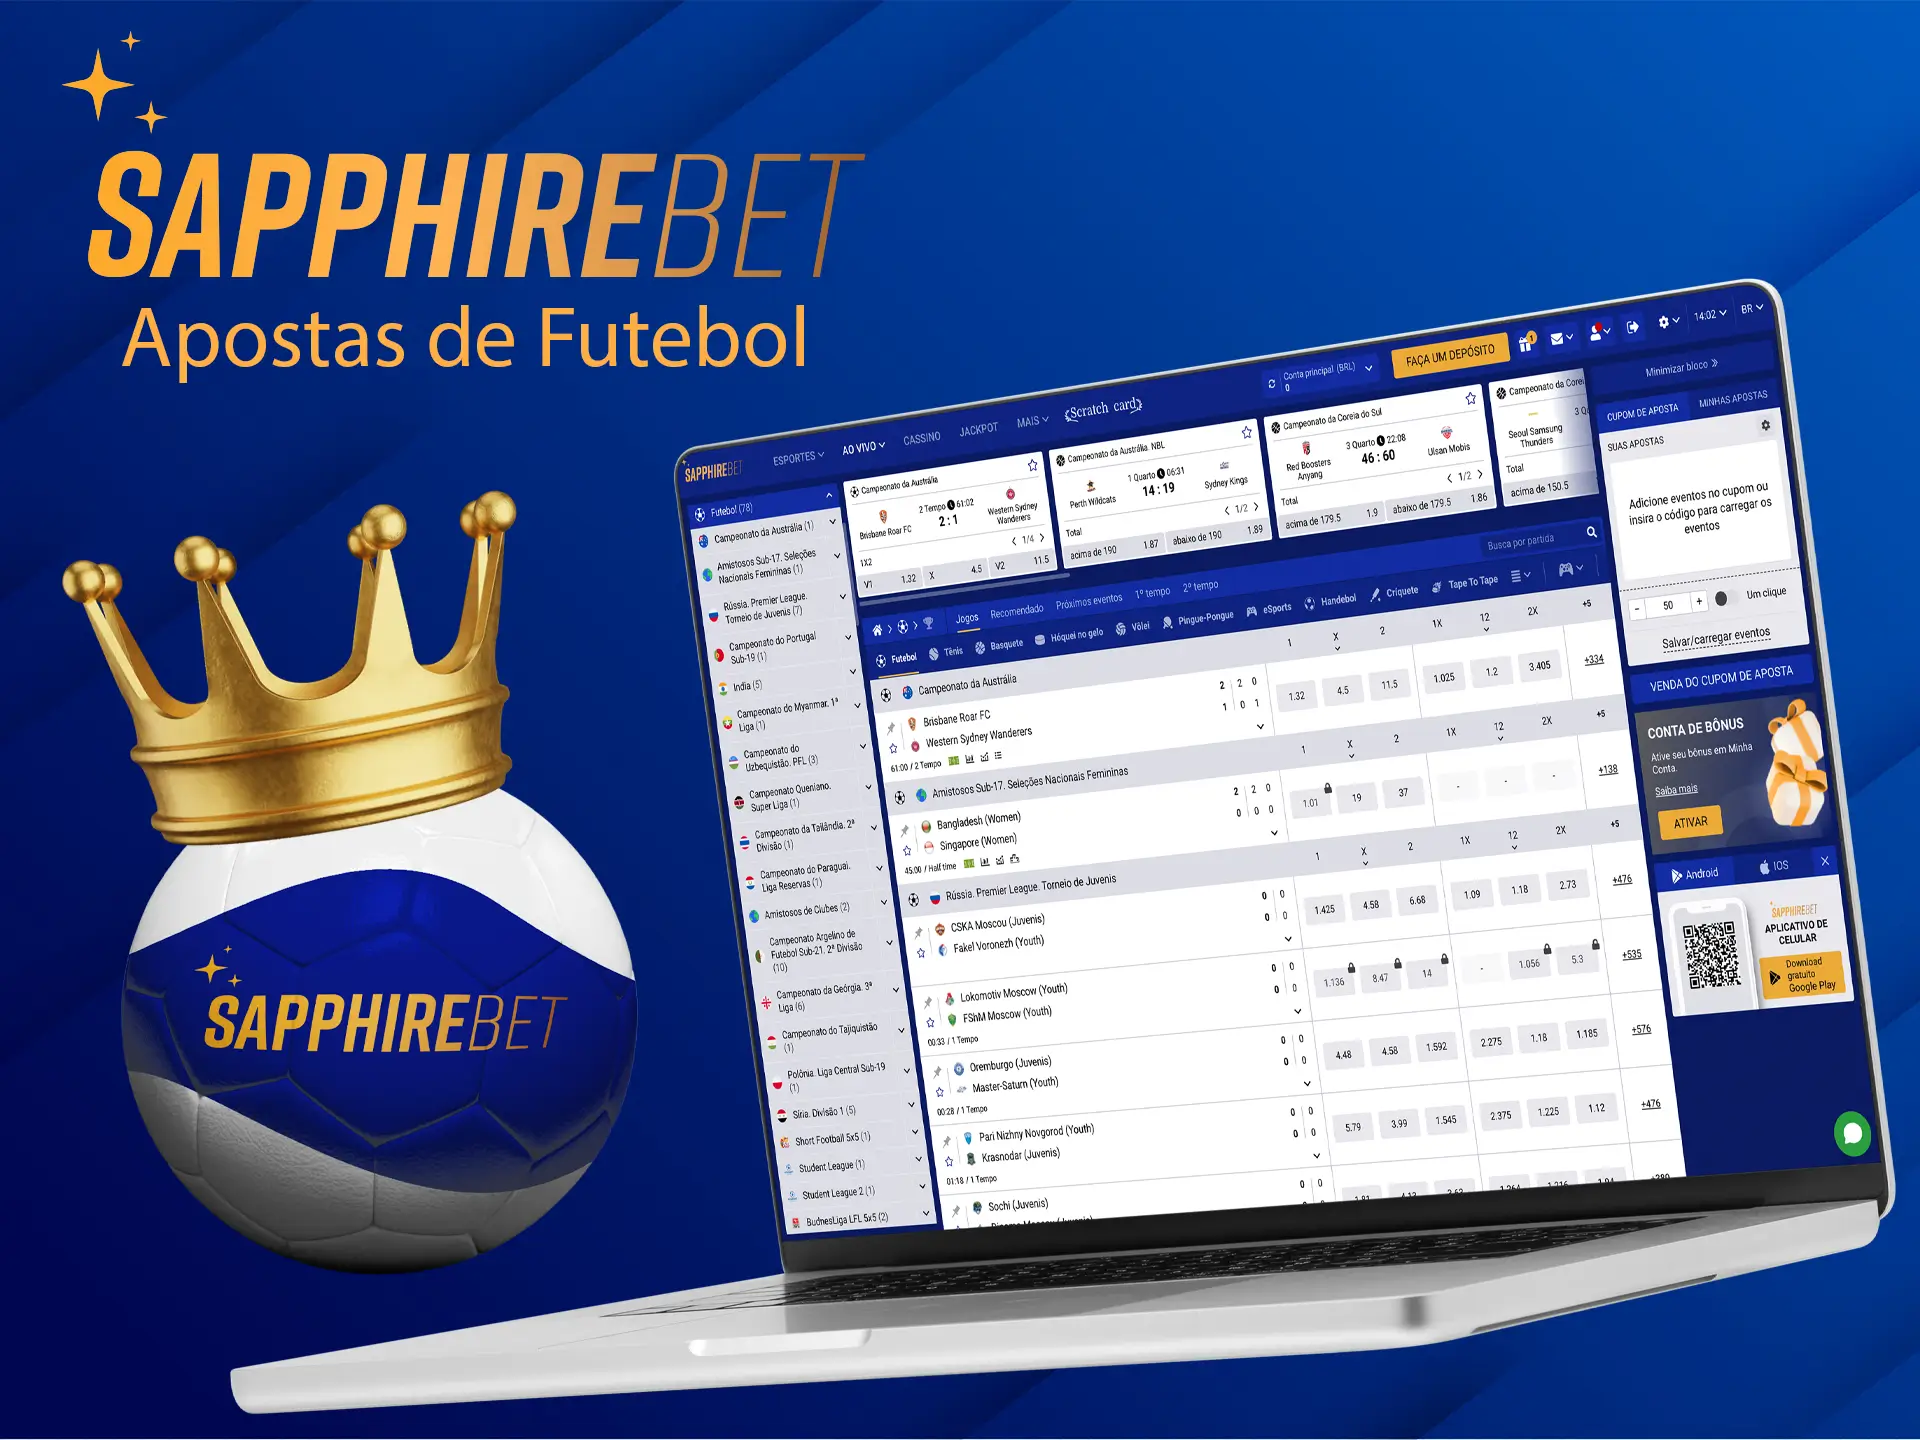 Os fãs de futebol apreciarão o número de campeonatos e apostas disponíveis no Sapphirebet Casino.